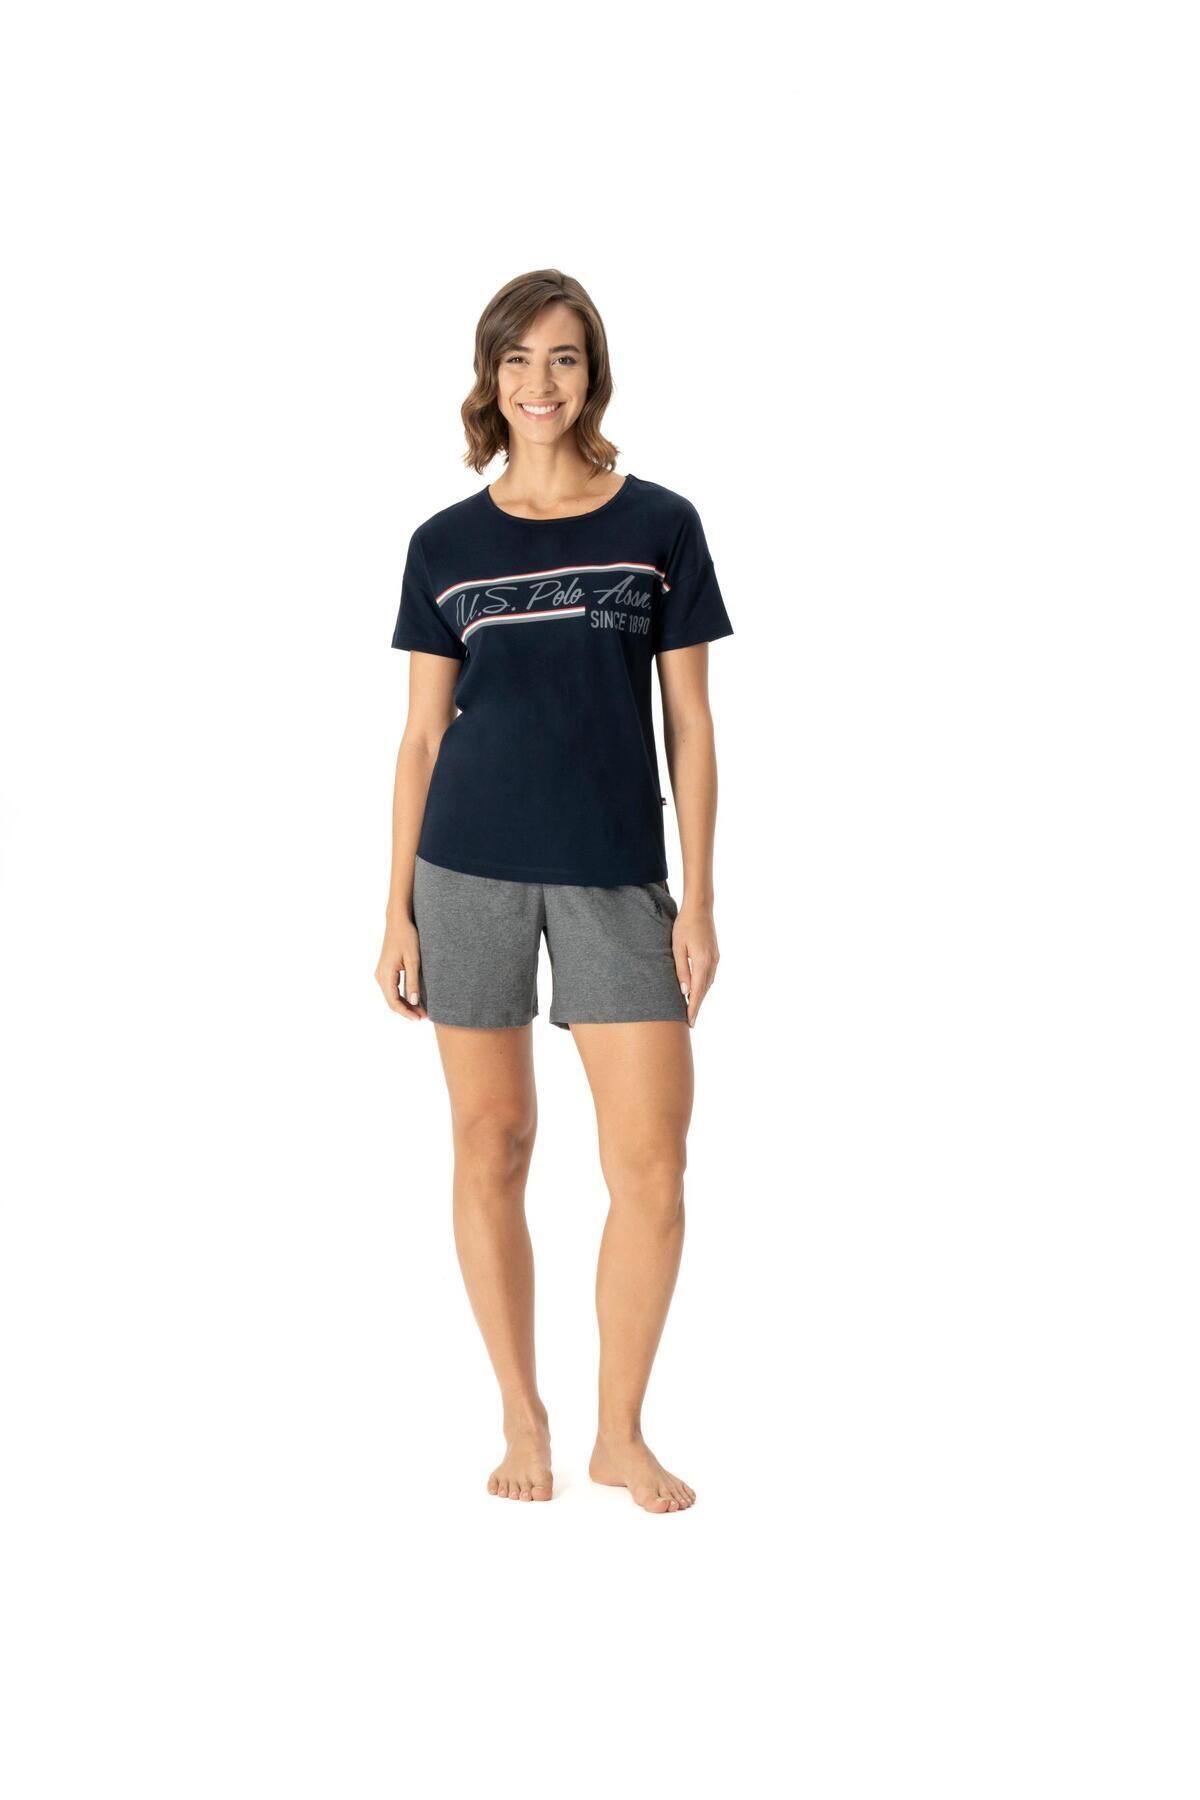 U.S. Polo Assn. Kadın Lacivert Geniş T-shirt Şort Takımı 16985